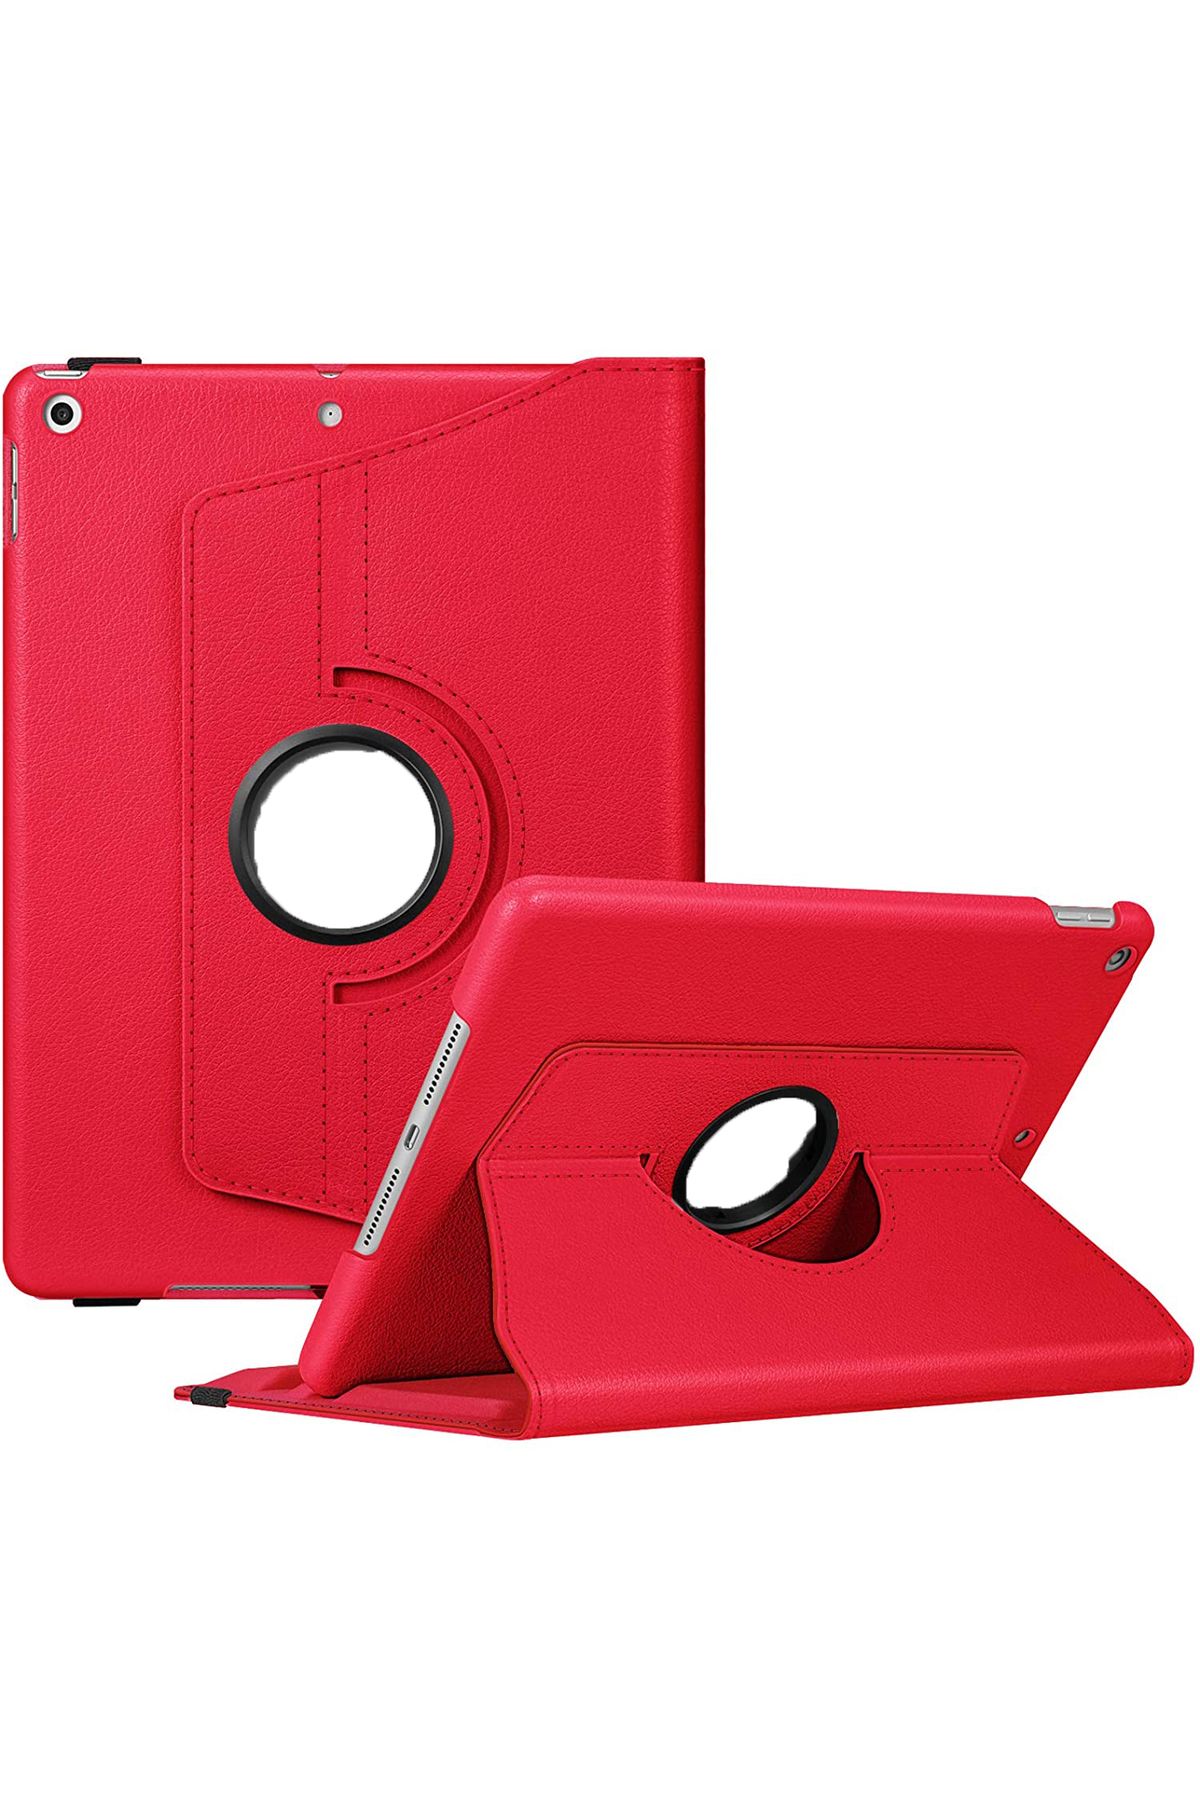 MOBAX Ipad Mini 3 Uyumlu  Kırmızı Dönebilen Standlı Case Kılıf A1599 A1600